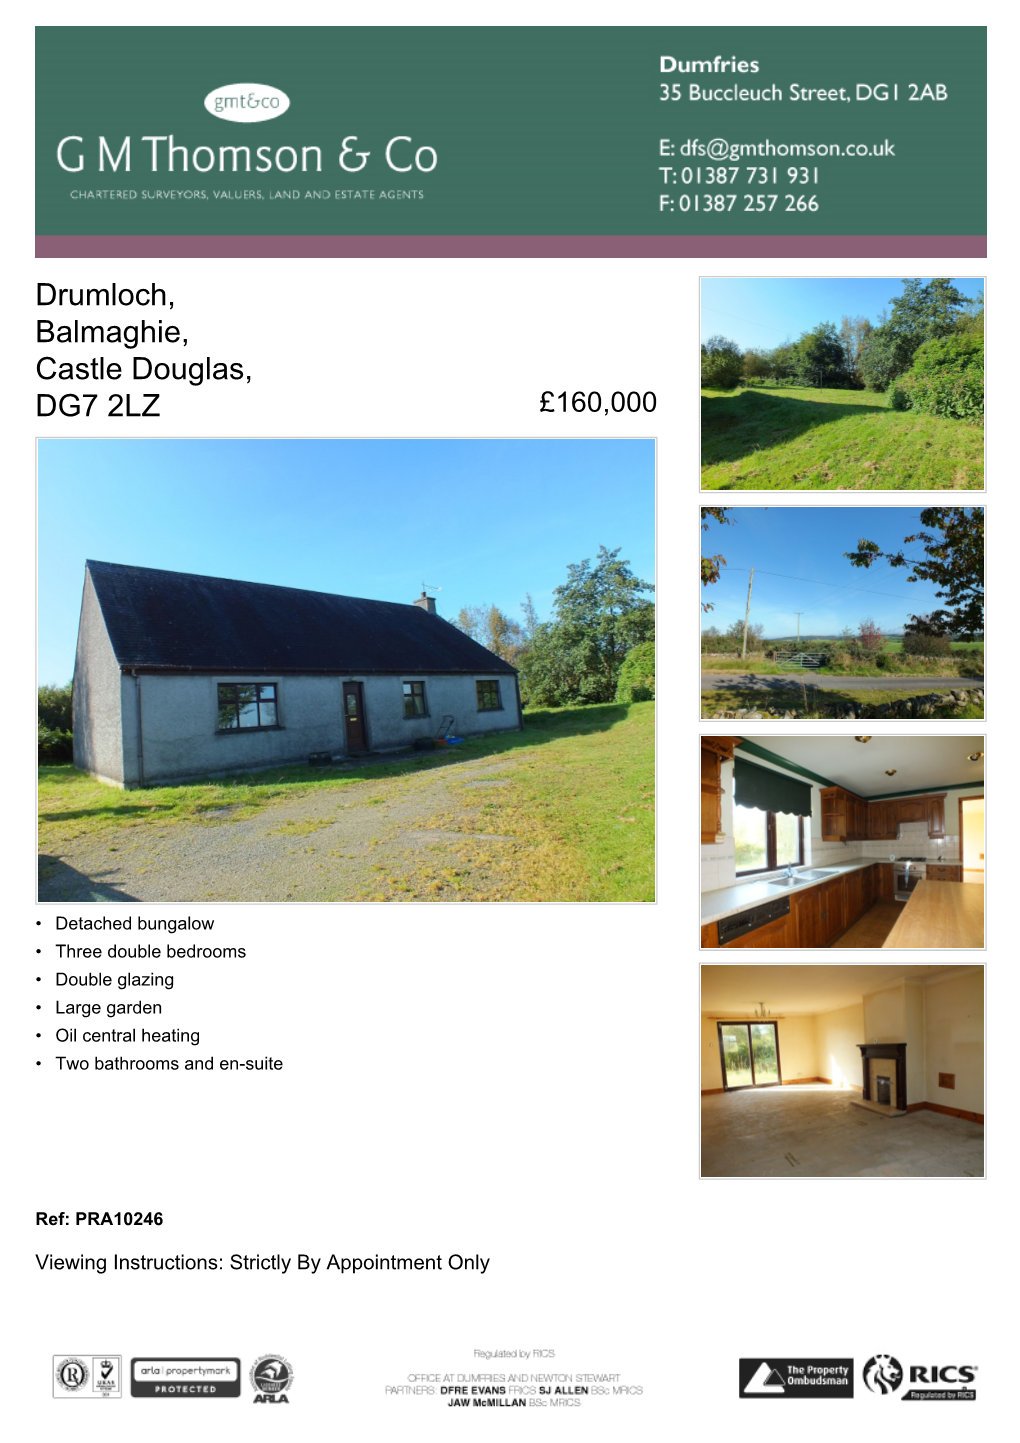 Drumloch, Balmaghie, Castle Douglas, DG7 2LZ £160,000